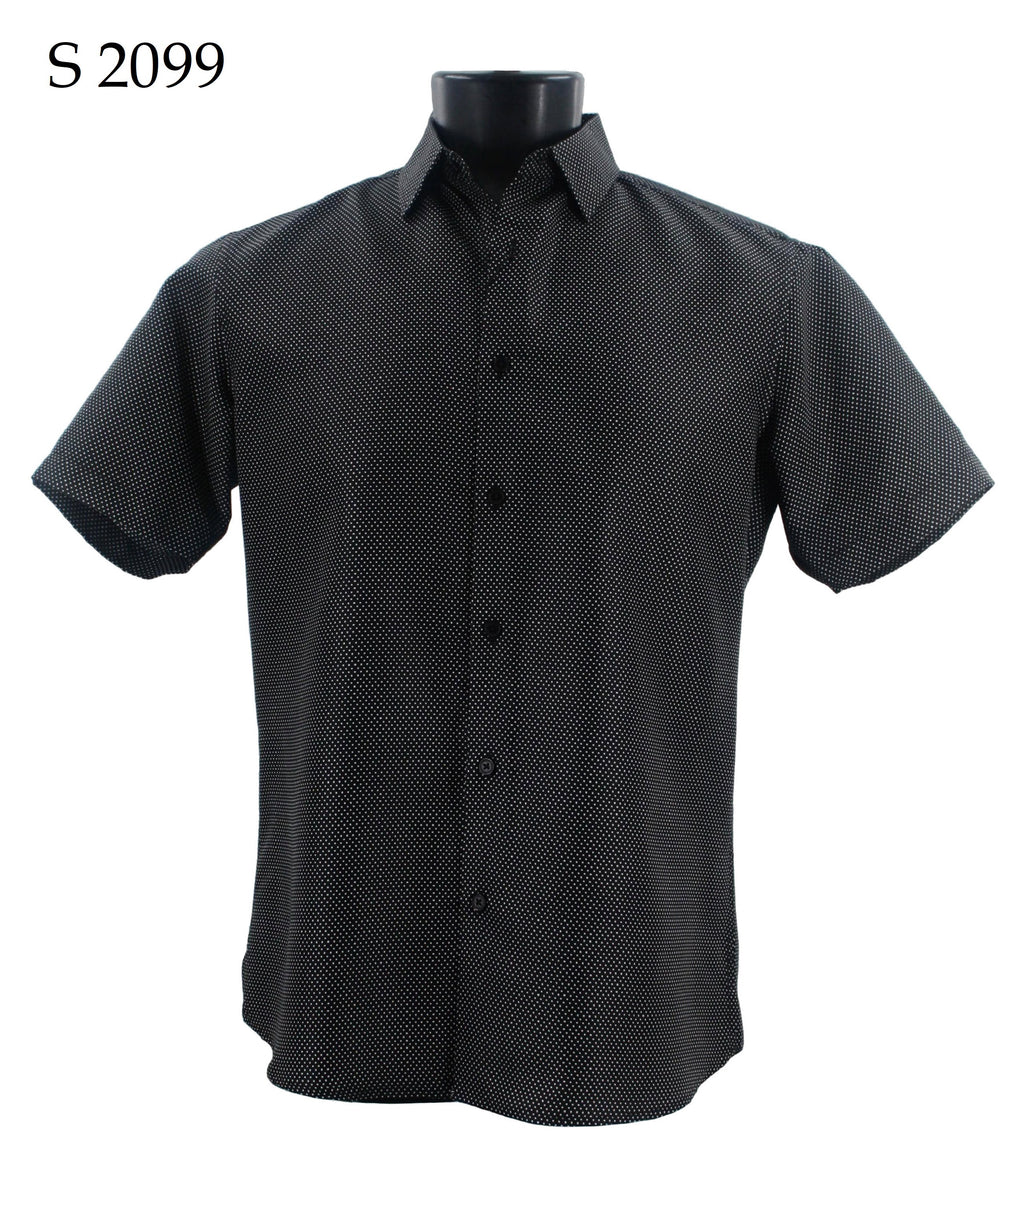 Sangi Short Sleeve Shirt S 2099